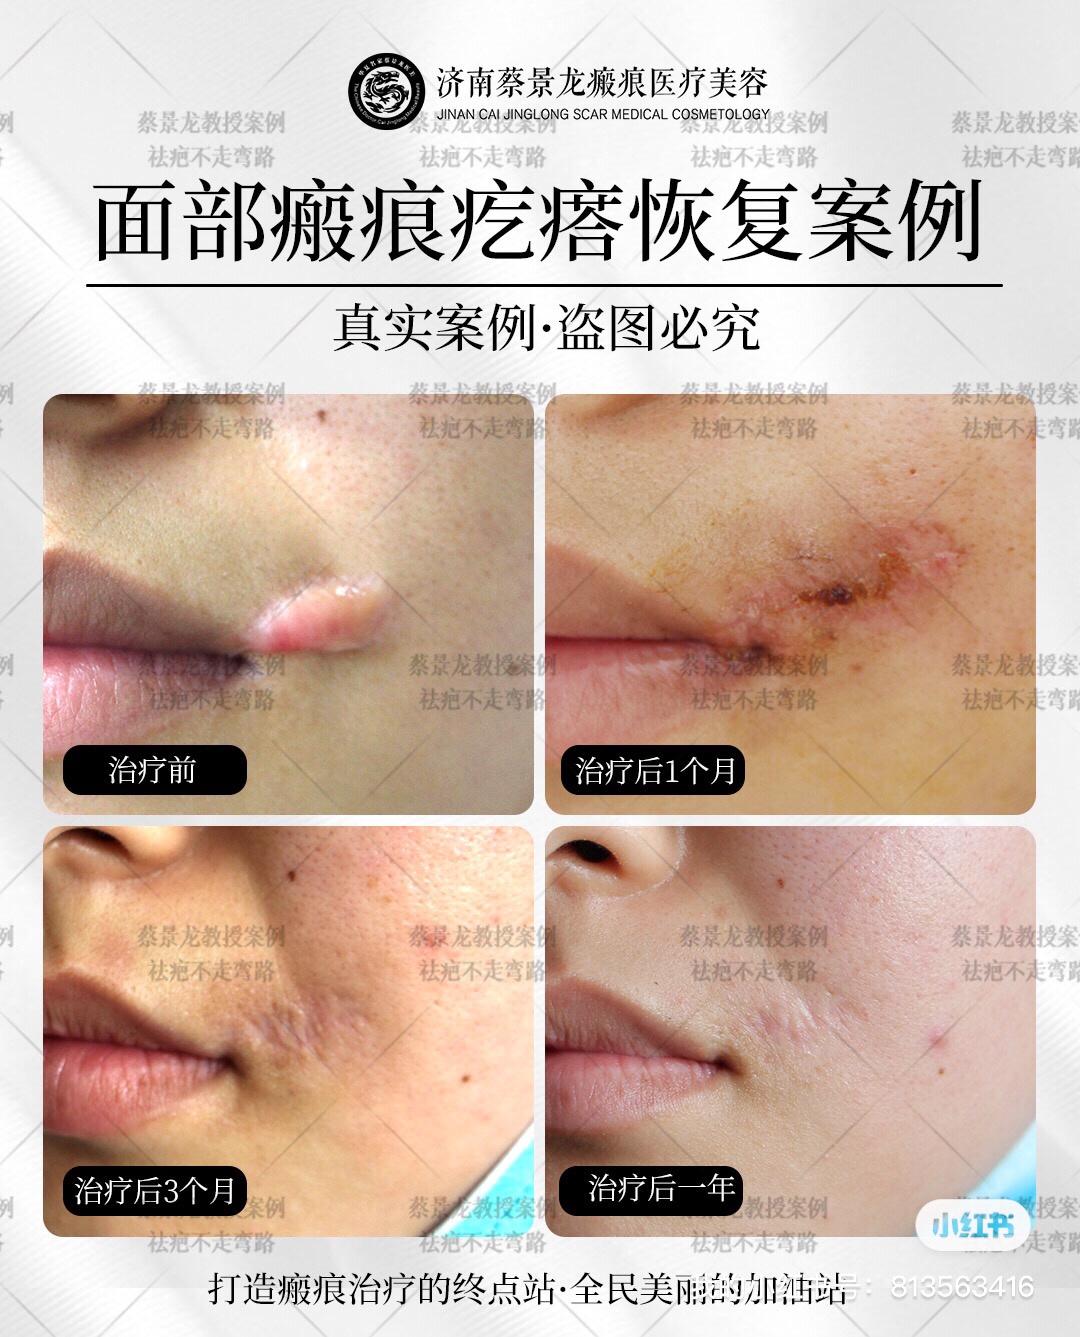 蔡景龙教授案例：面部疤痕疙瘩修复 